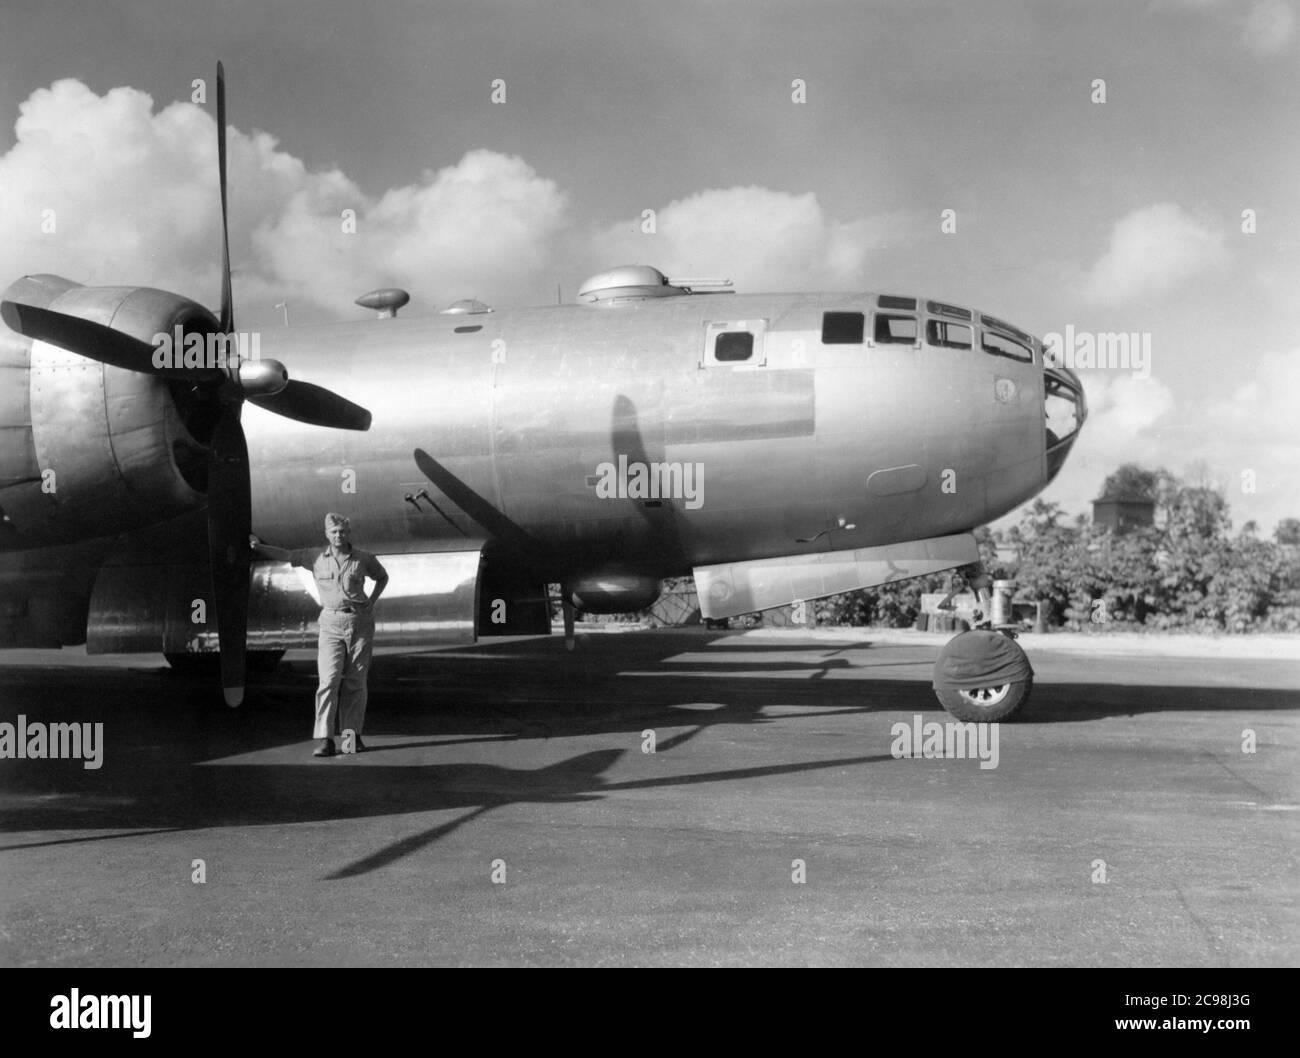 Boeing B-29 Superfortress auf der Fluglinie. Northfield, Guam, Juli 1945. Zum 75. Jahrestag des V-J Day hat die Consoli Collection vier Fotoessays von U.S. Navy LT. (j.g.) veröffentlicht. Joseph J. Consoli. Die Fotos wurden zwischen Juli und Dezember 1945 auf den Marianen aufgenommen. Sie dokumentieren das Leben der US-Marine vor und nach der japanischen Kapitulation. Stockfoto